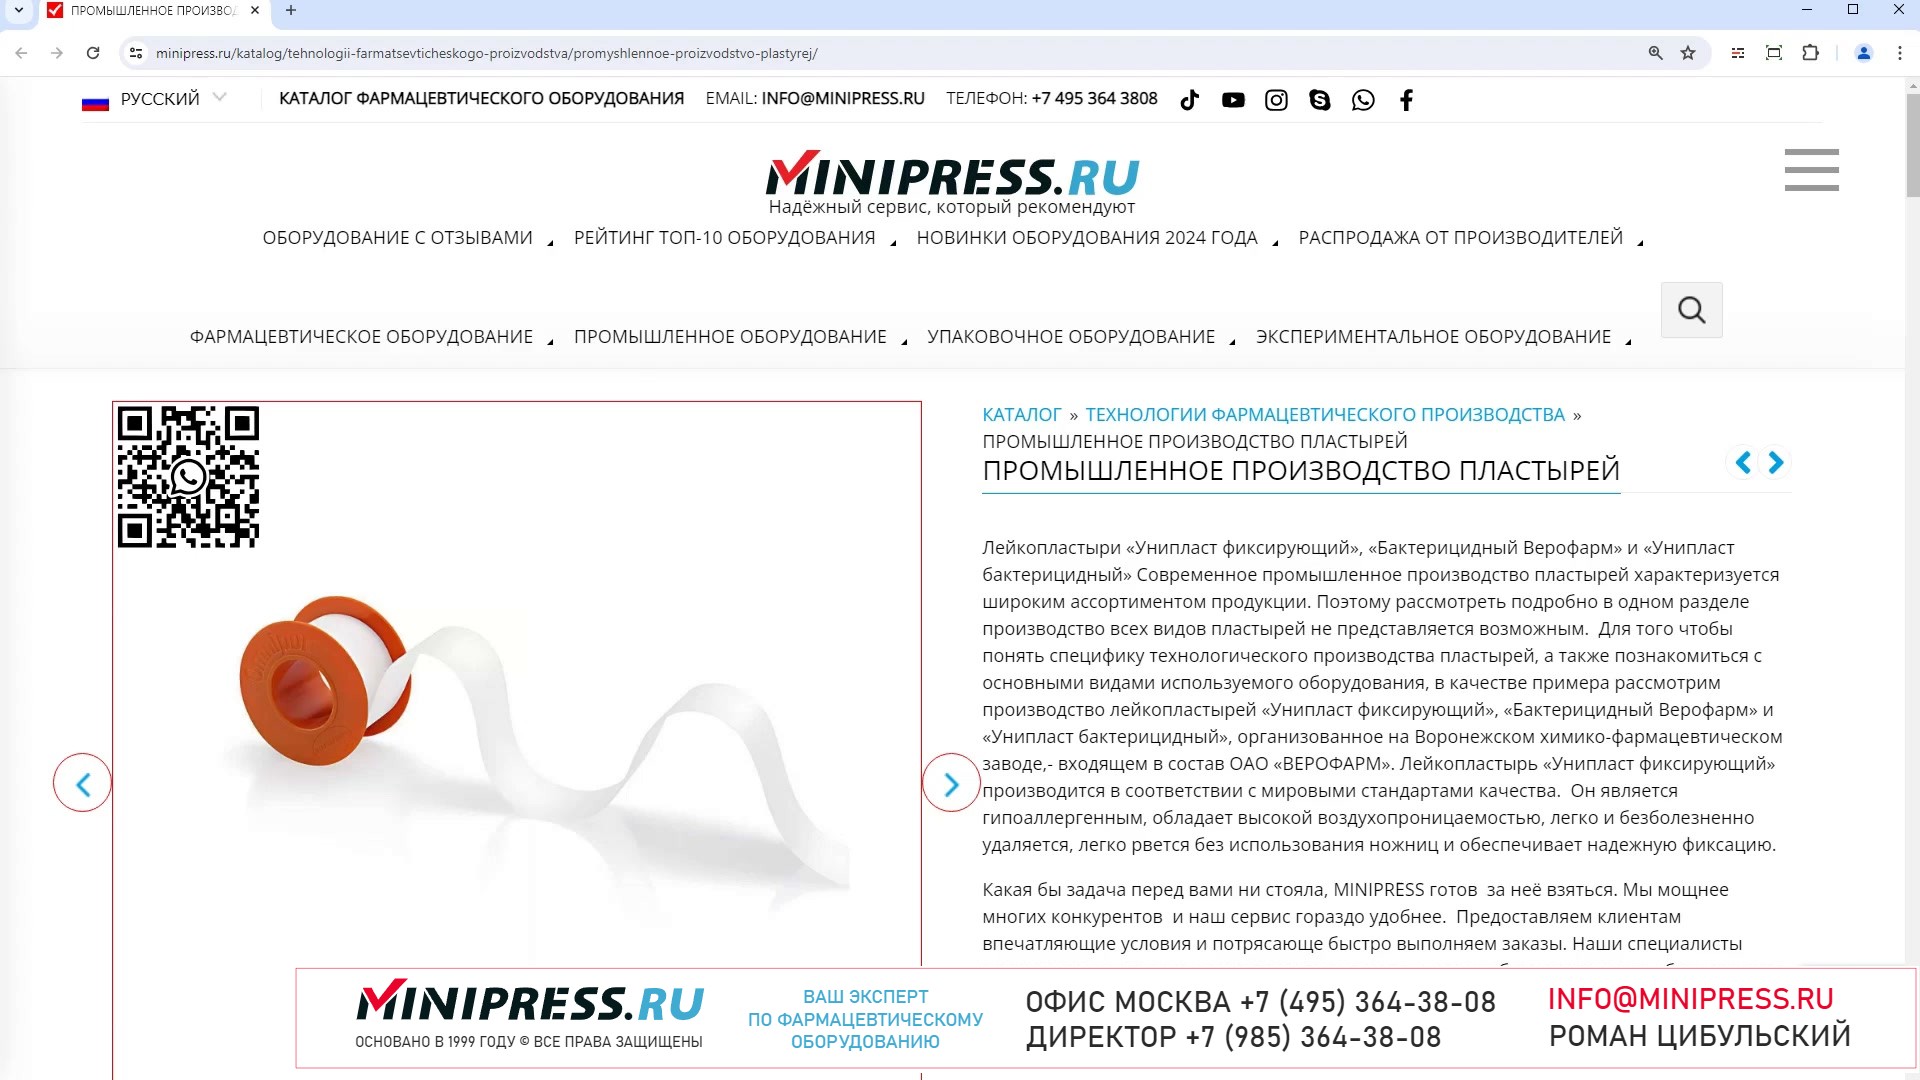 Minipress.ru Промышленное производство пластырей